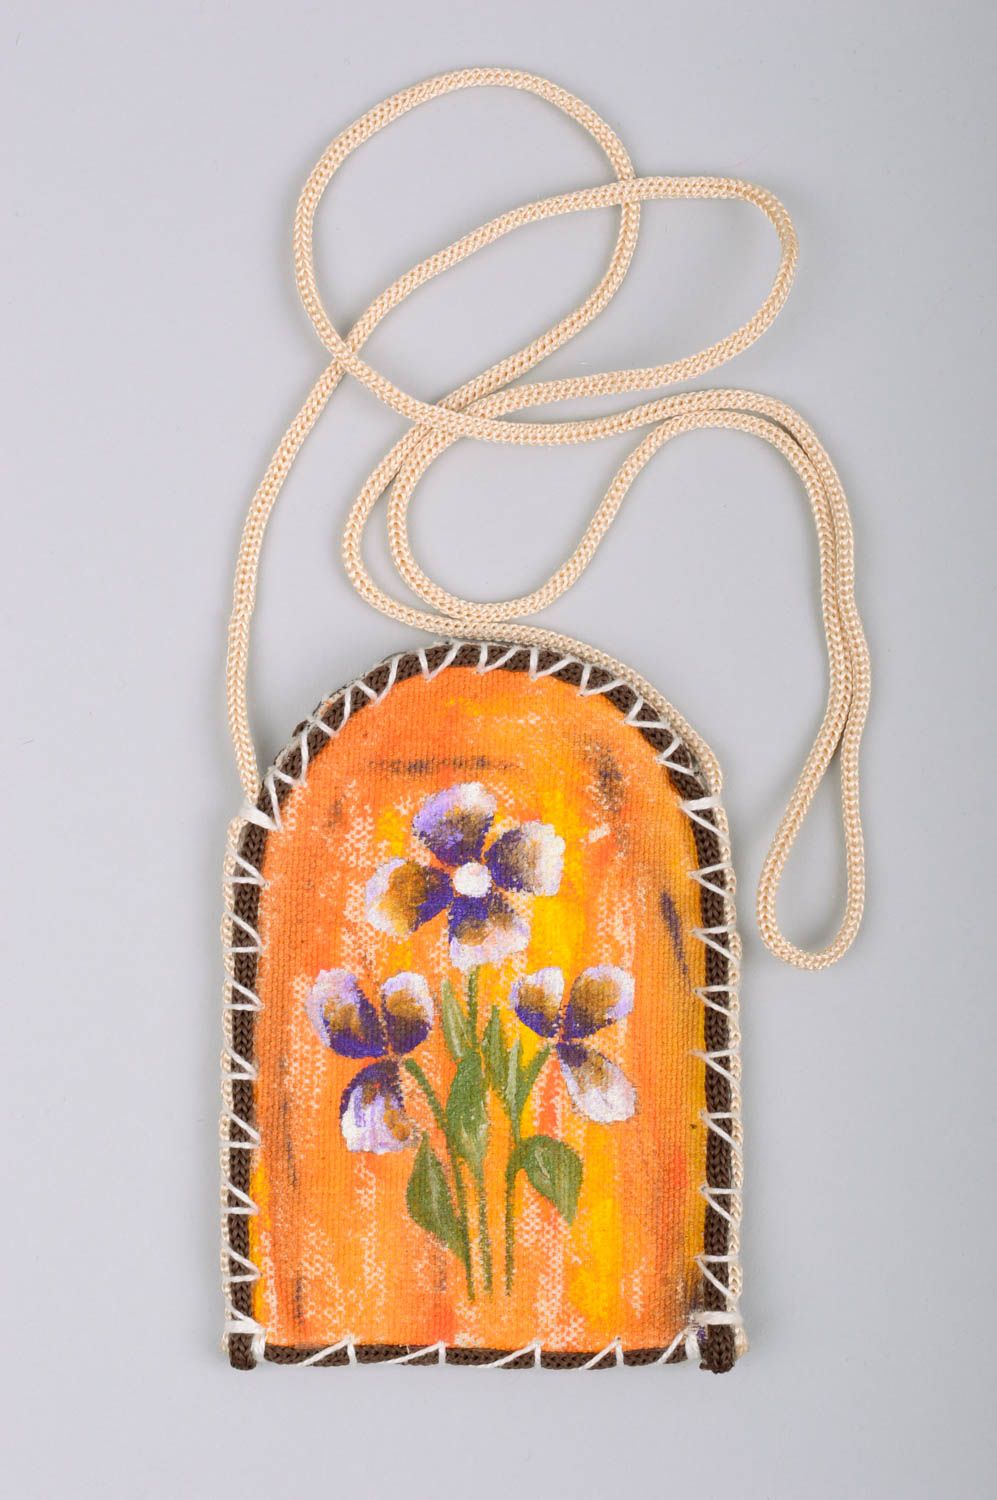 Housse pour téléphone portable en bâche peinte motif floral faite main sur lacet photo 1